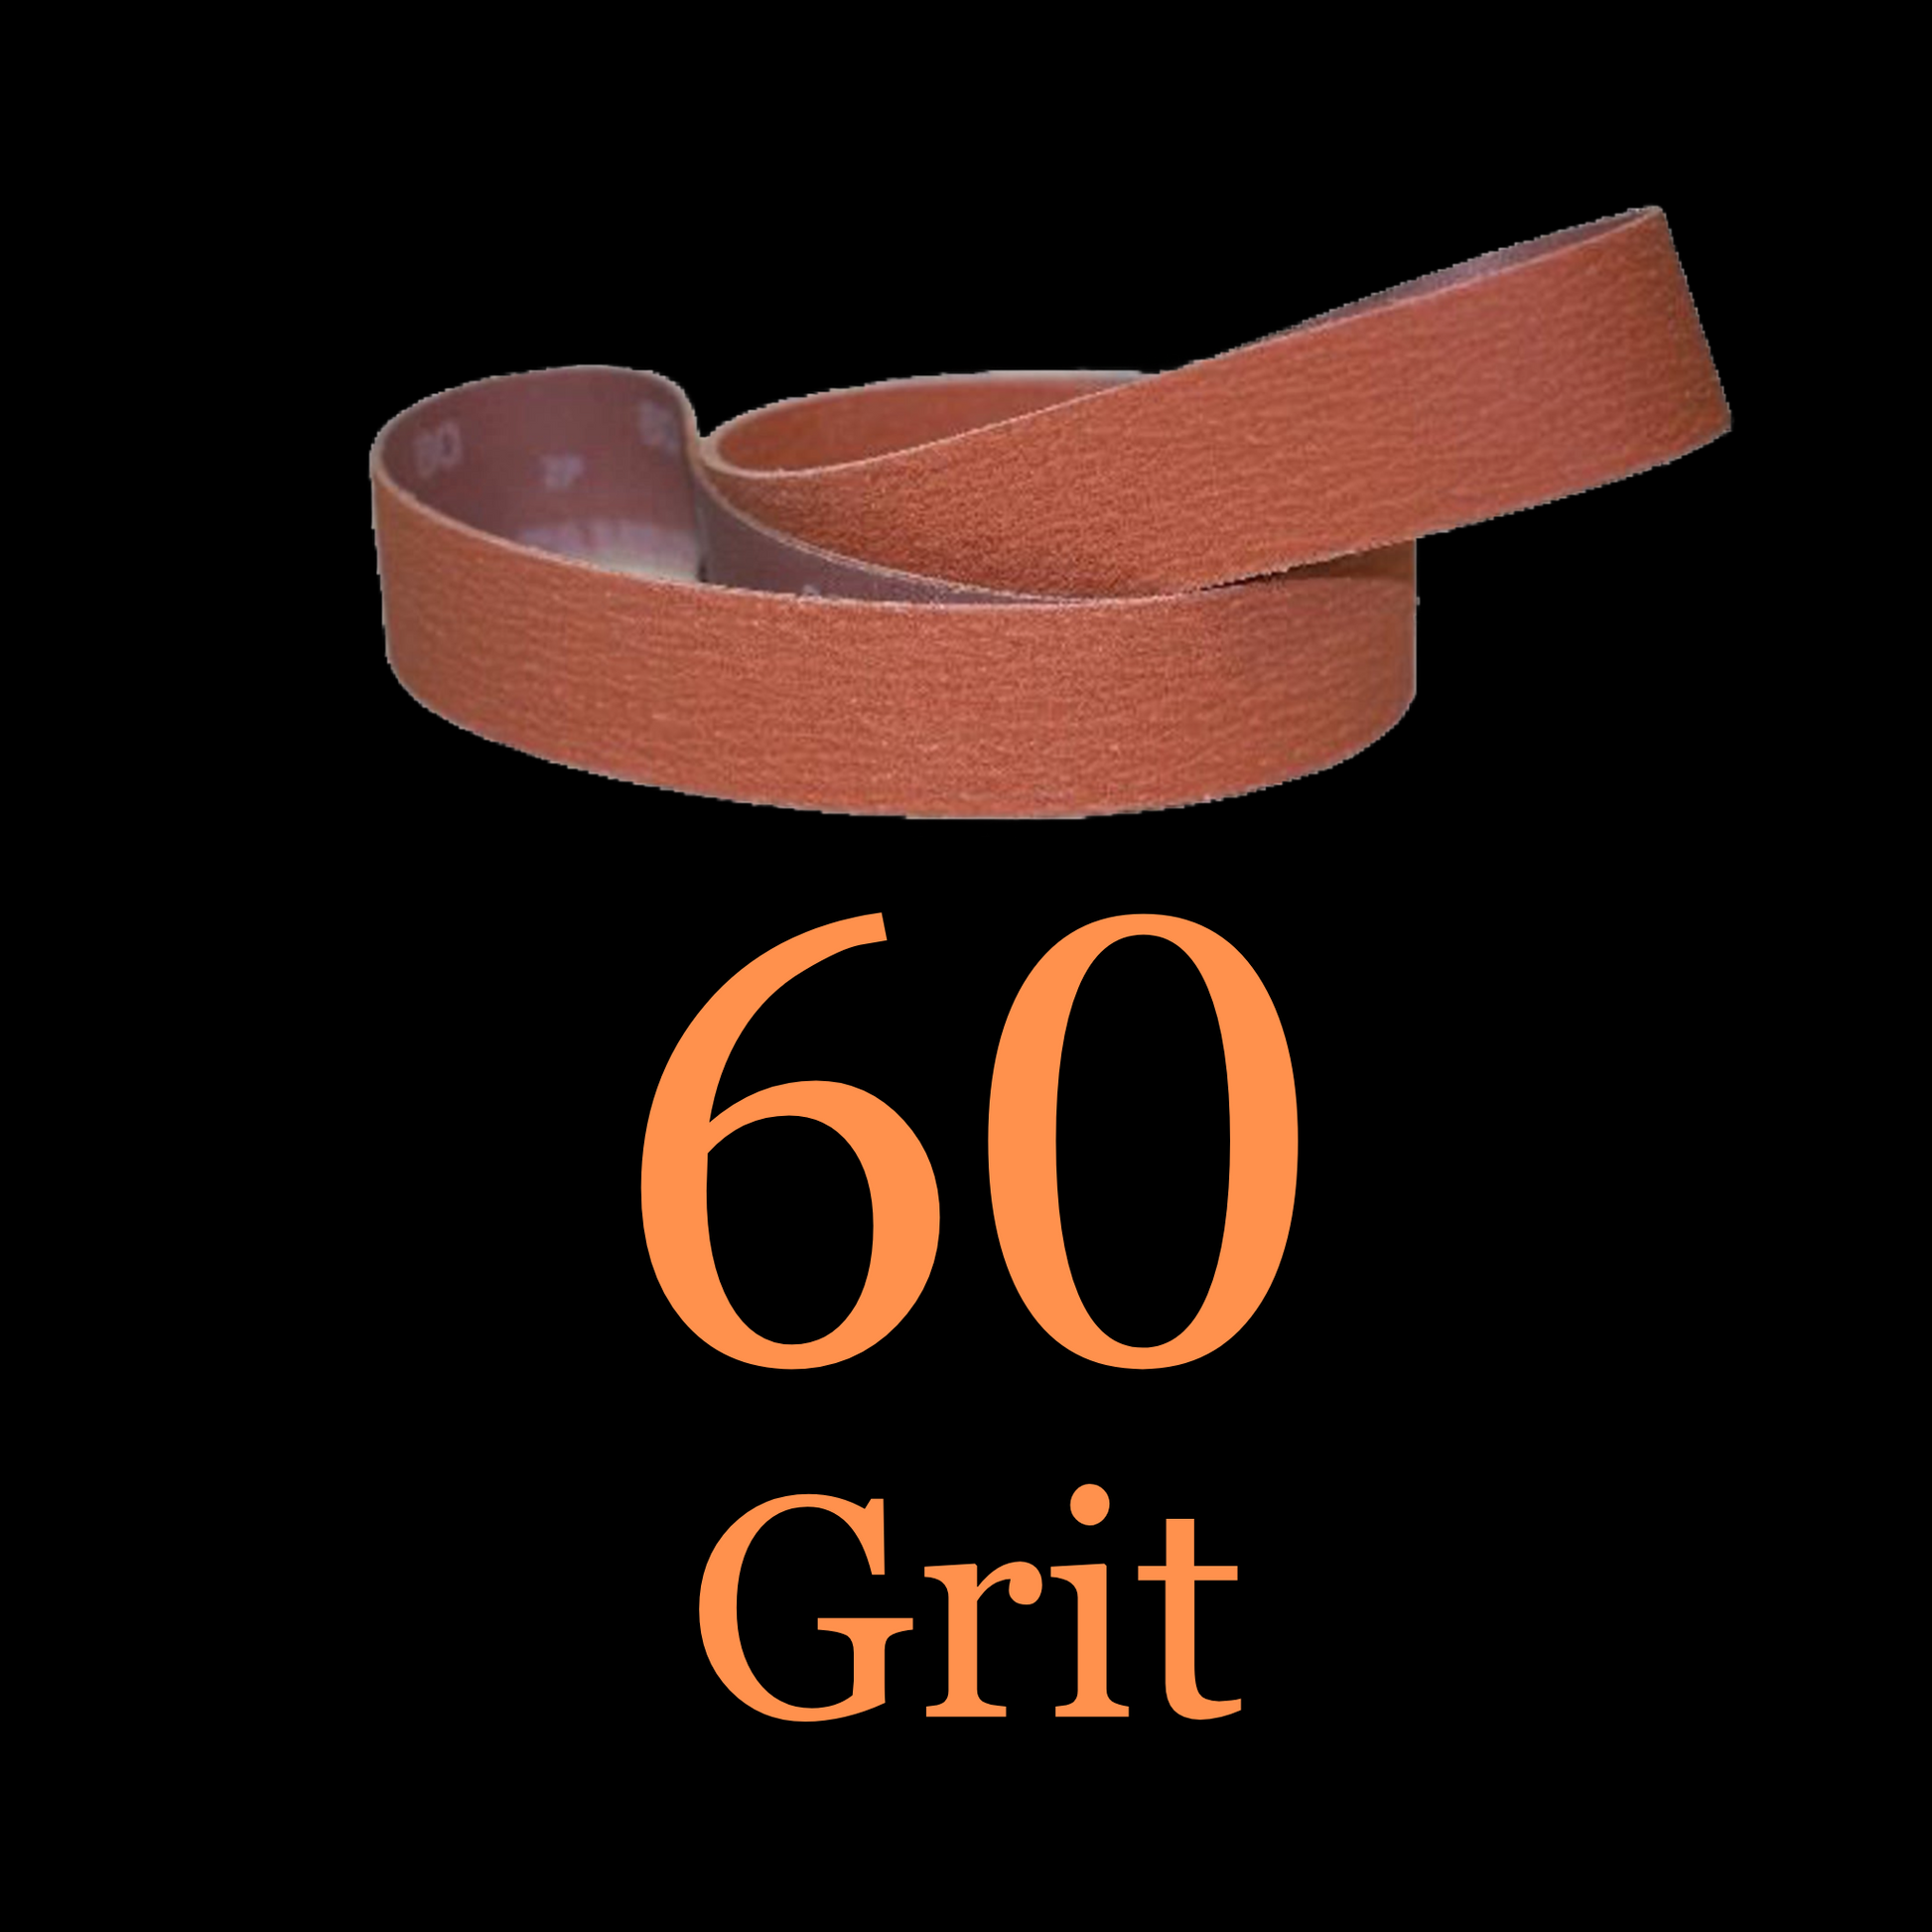 1” x 42” Ceramic Blaze Grinder Belt 60 Grit